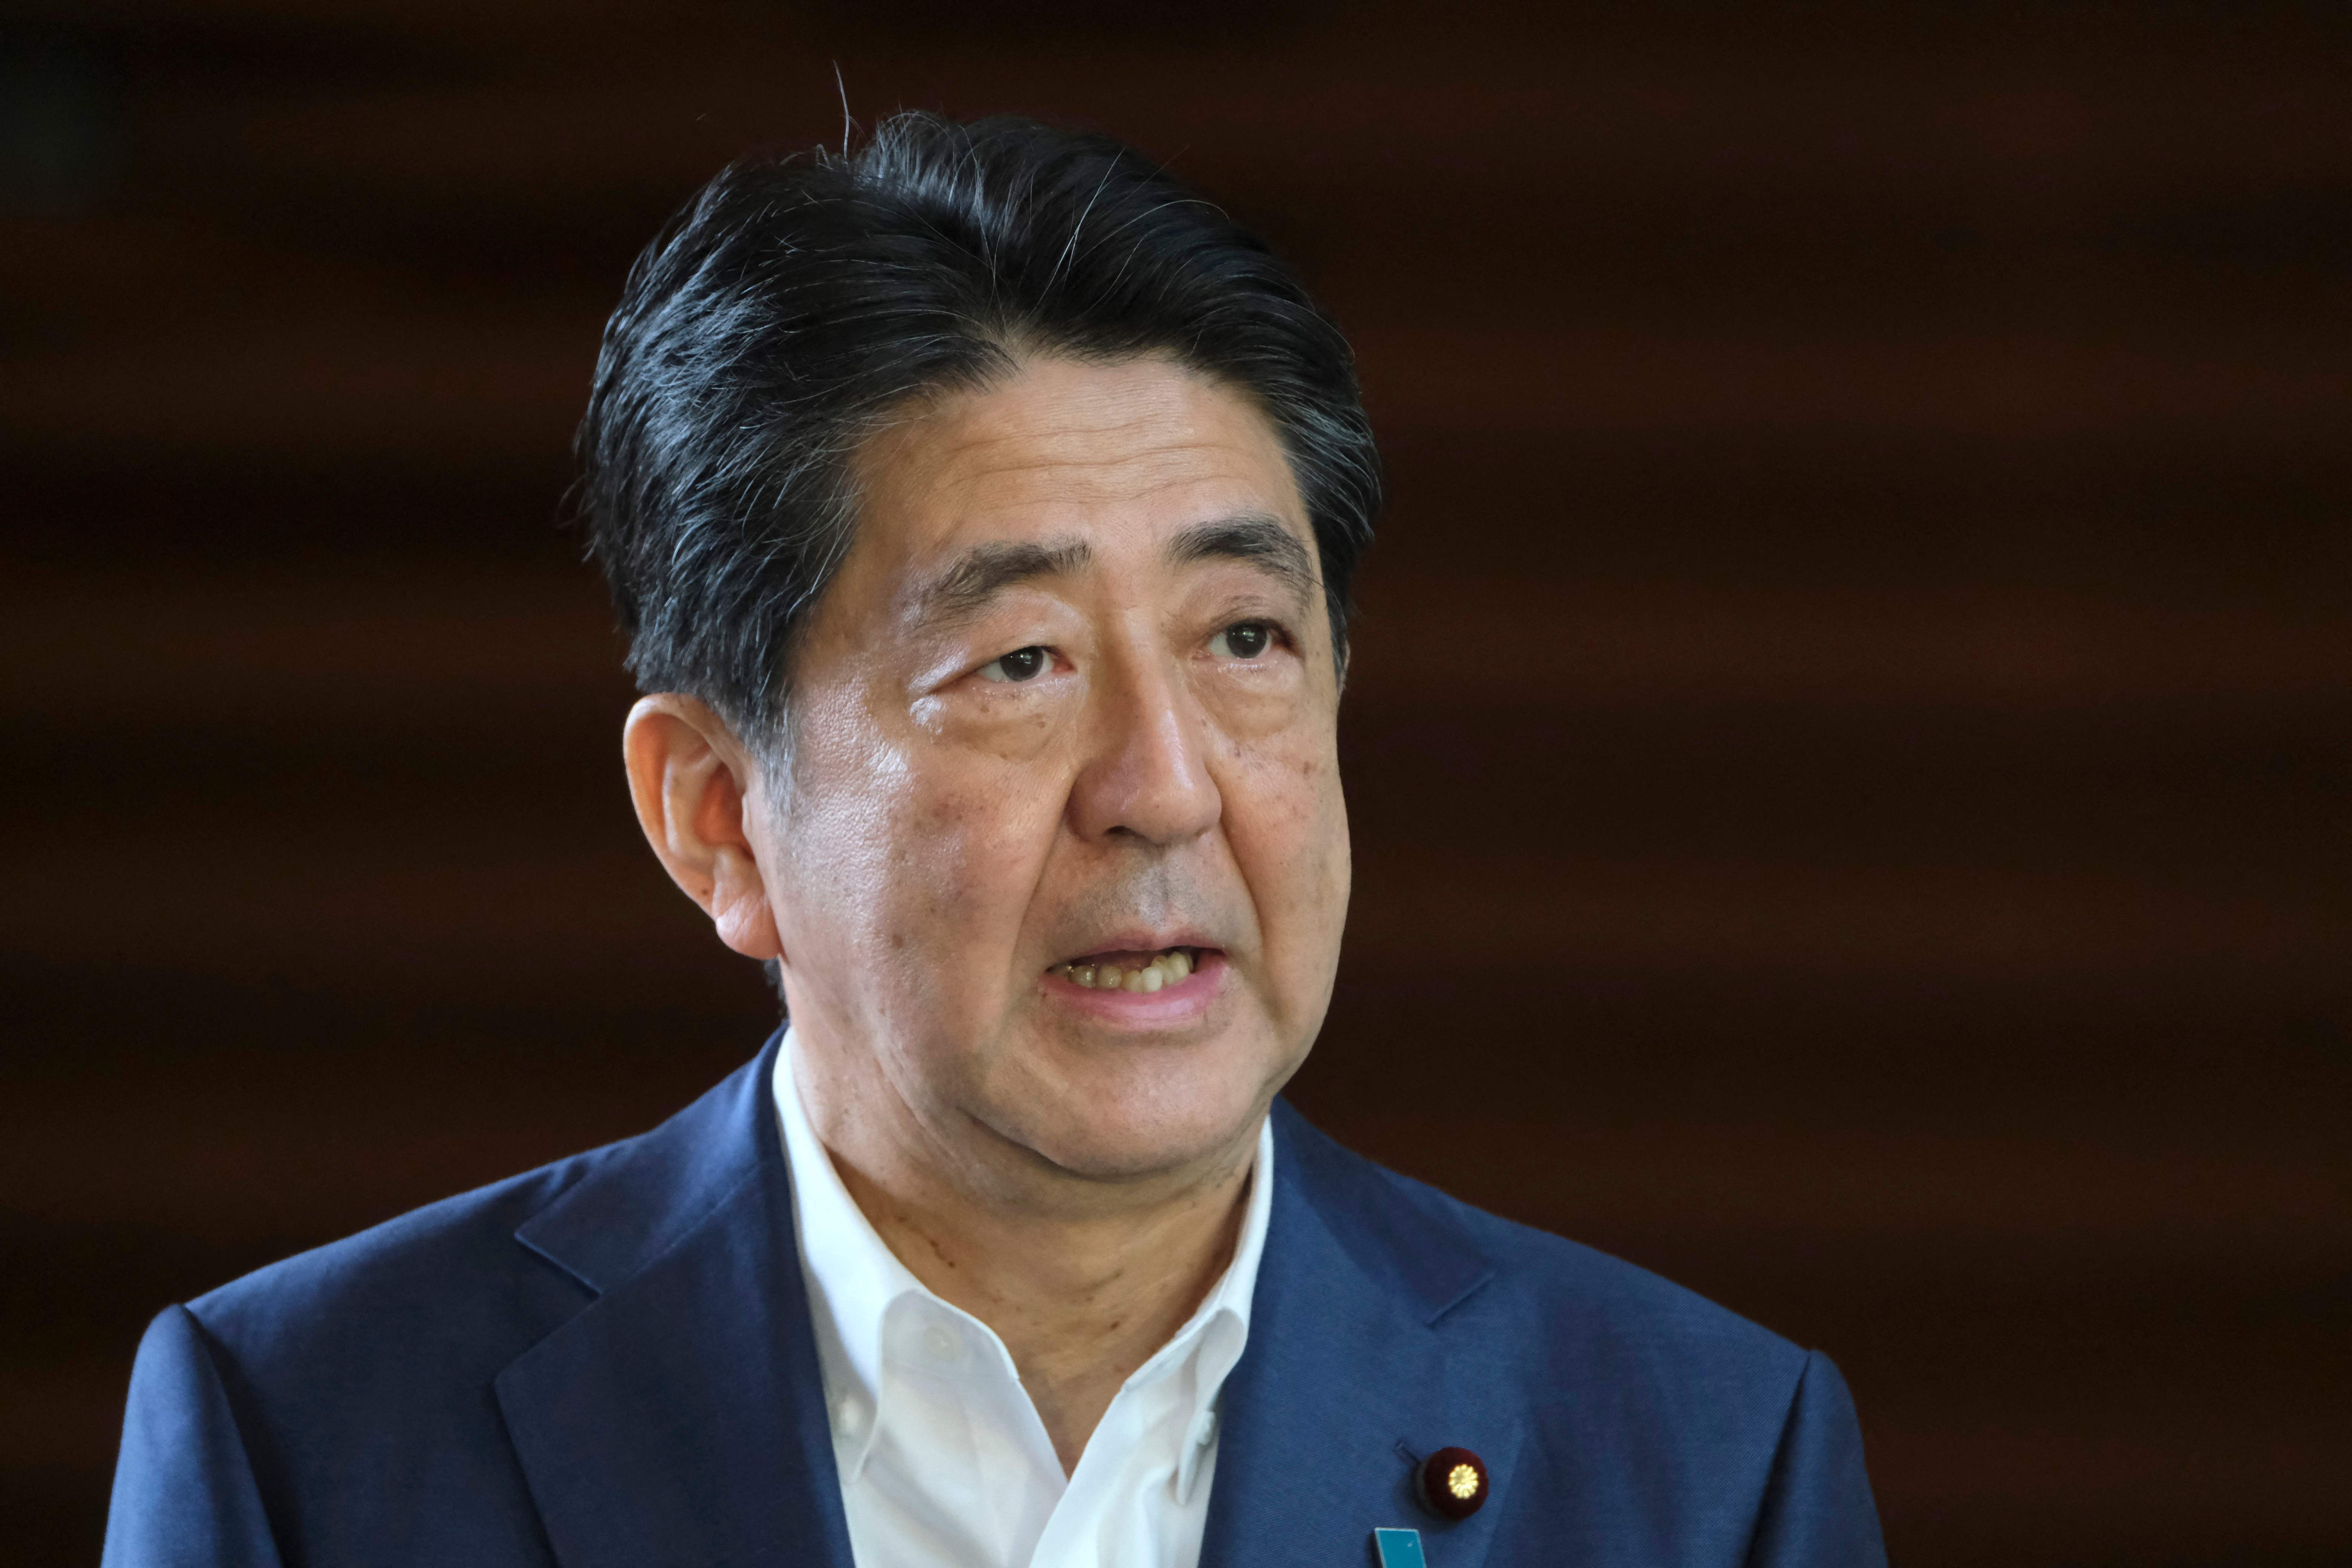 日本现任首相的照片图片